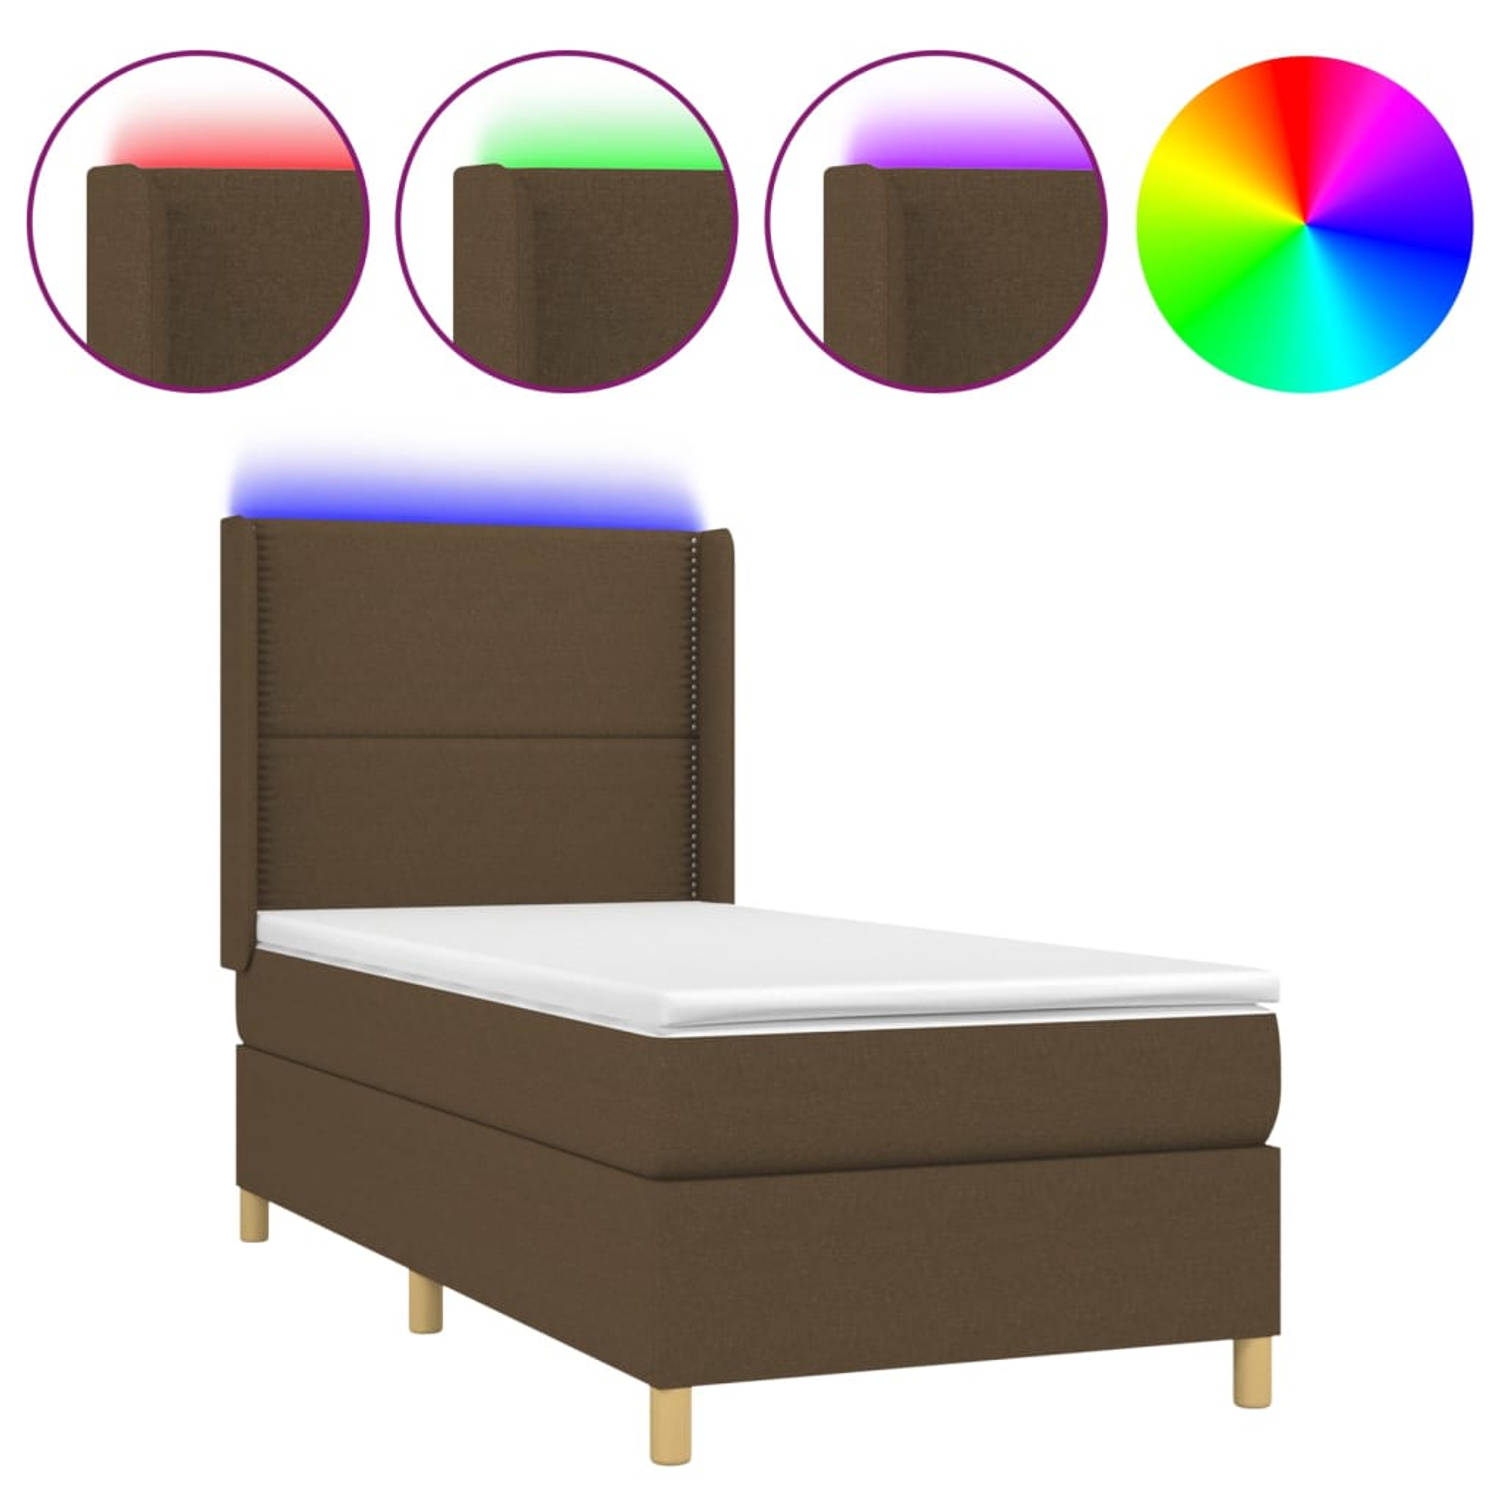 The Living Store Boxspring - Donkerbruin - 193 x 93 x 118/128 cm - Verstelbaar hoofdbord - Kleurrijke LED-verlichting - Pocketvering matras - Huidvriendelijk topmatras - Inclusief